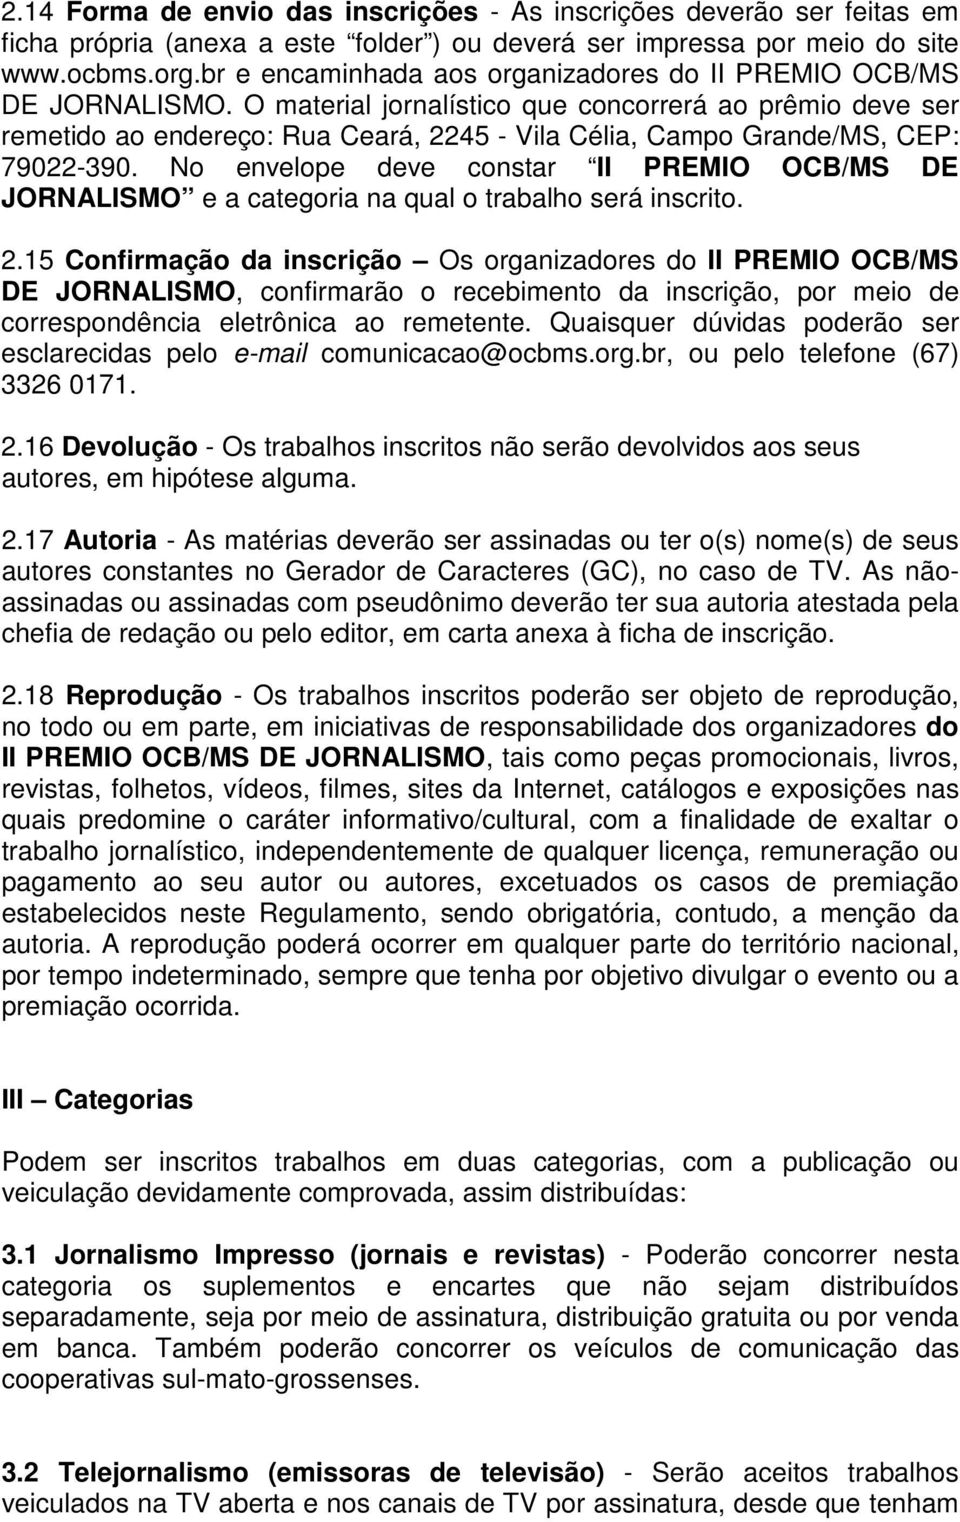 O material jornalístico que concorrerá ao prêmio deve ser remetido ao endereço: Rua Ceará, 2245 - Vila Célia, Campo Grande/MS, CEP: 79022-390.